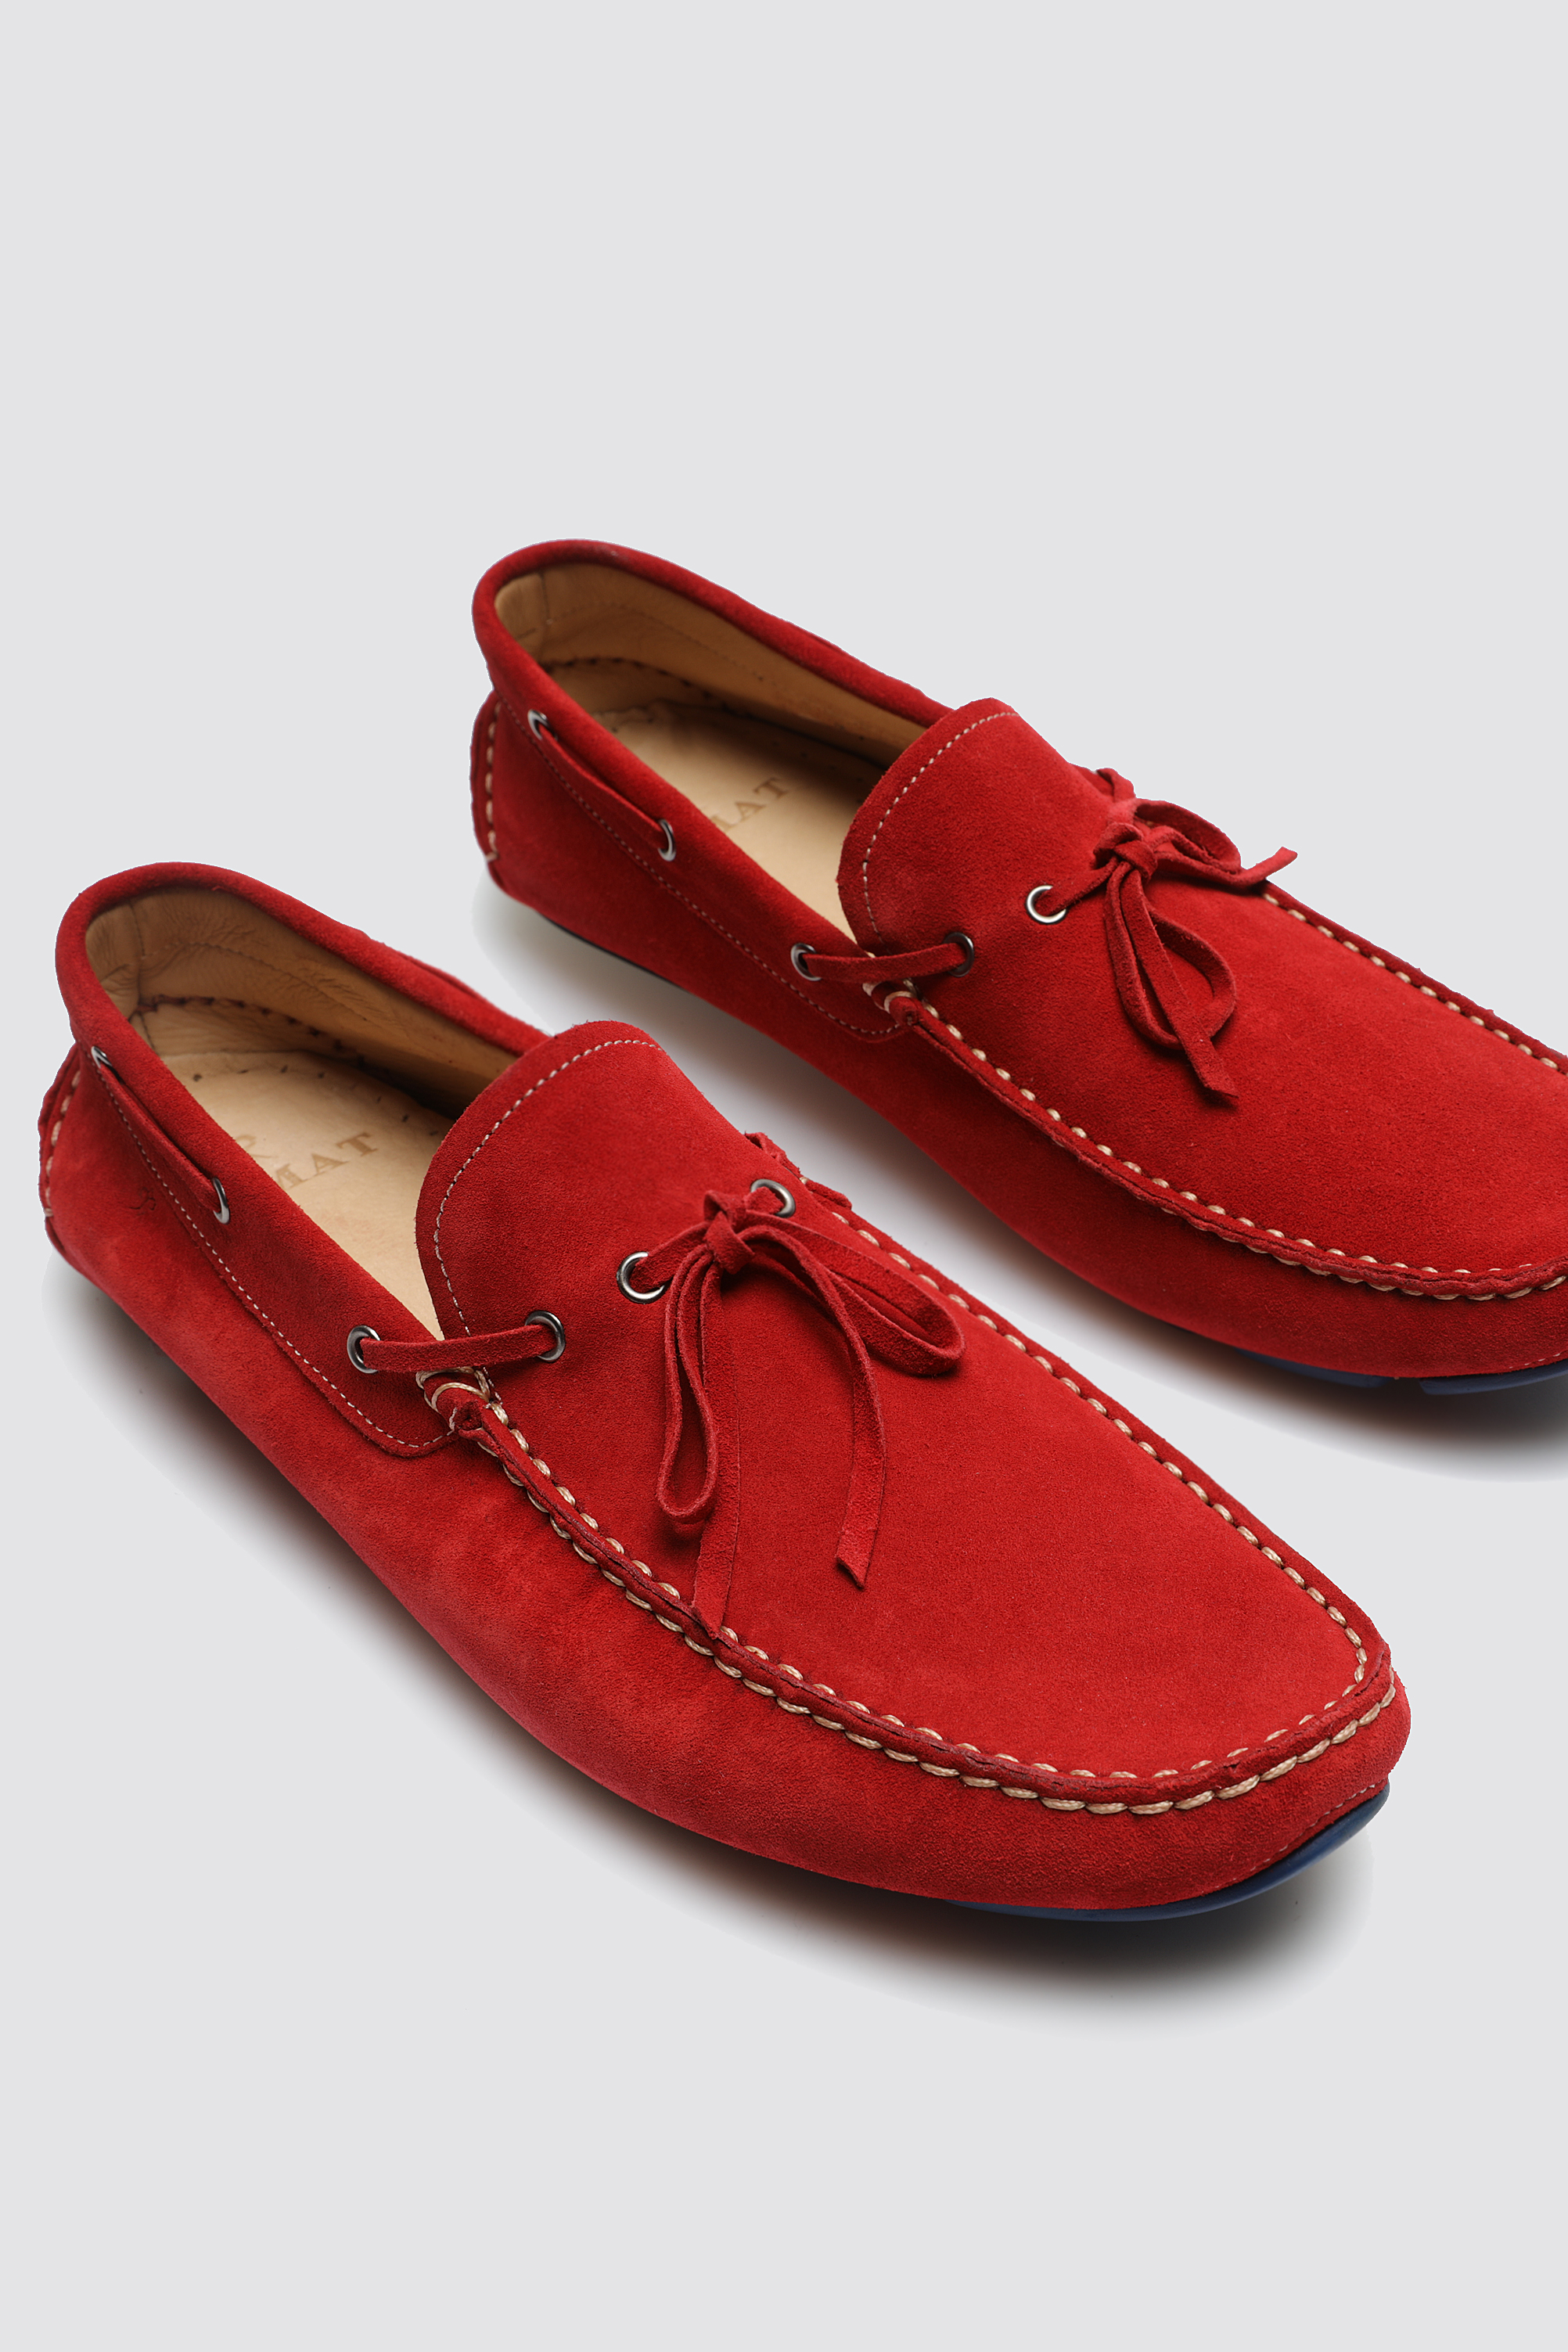 Damat Tween Damat Kırmızı Ayakkabı. 1